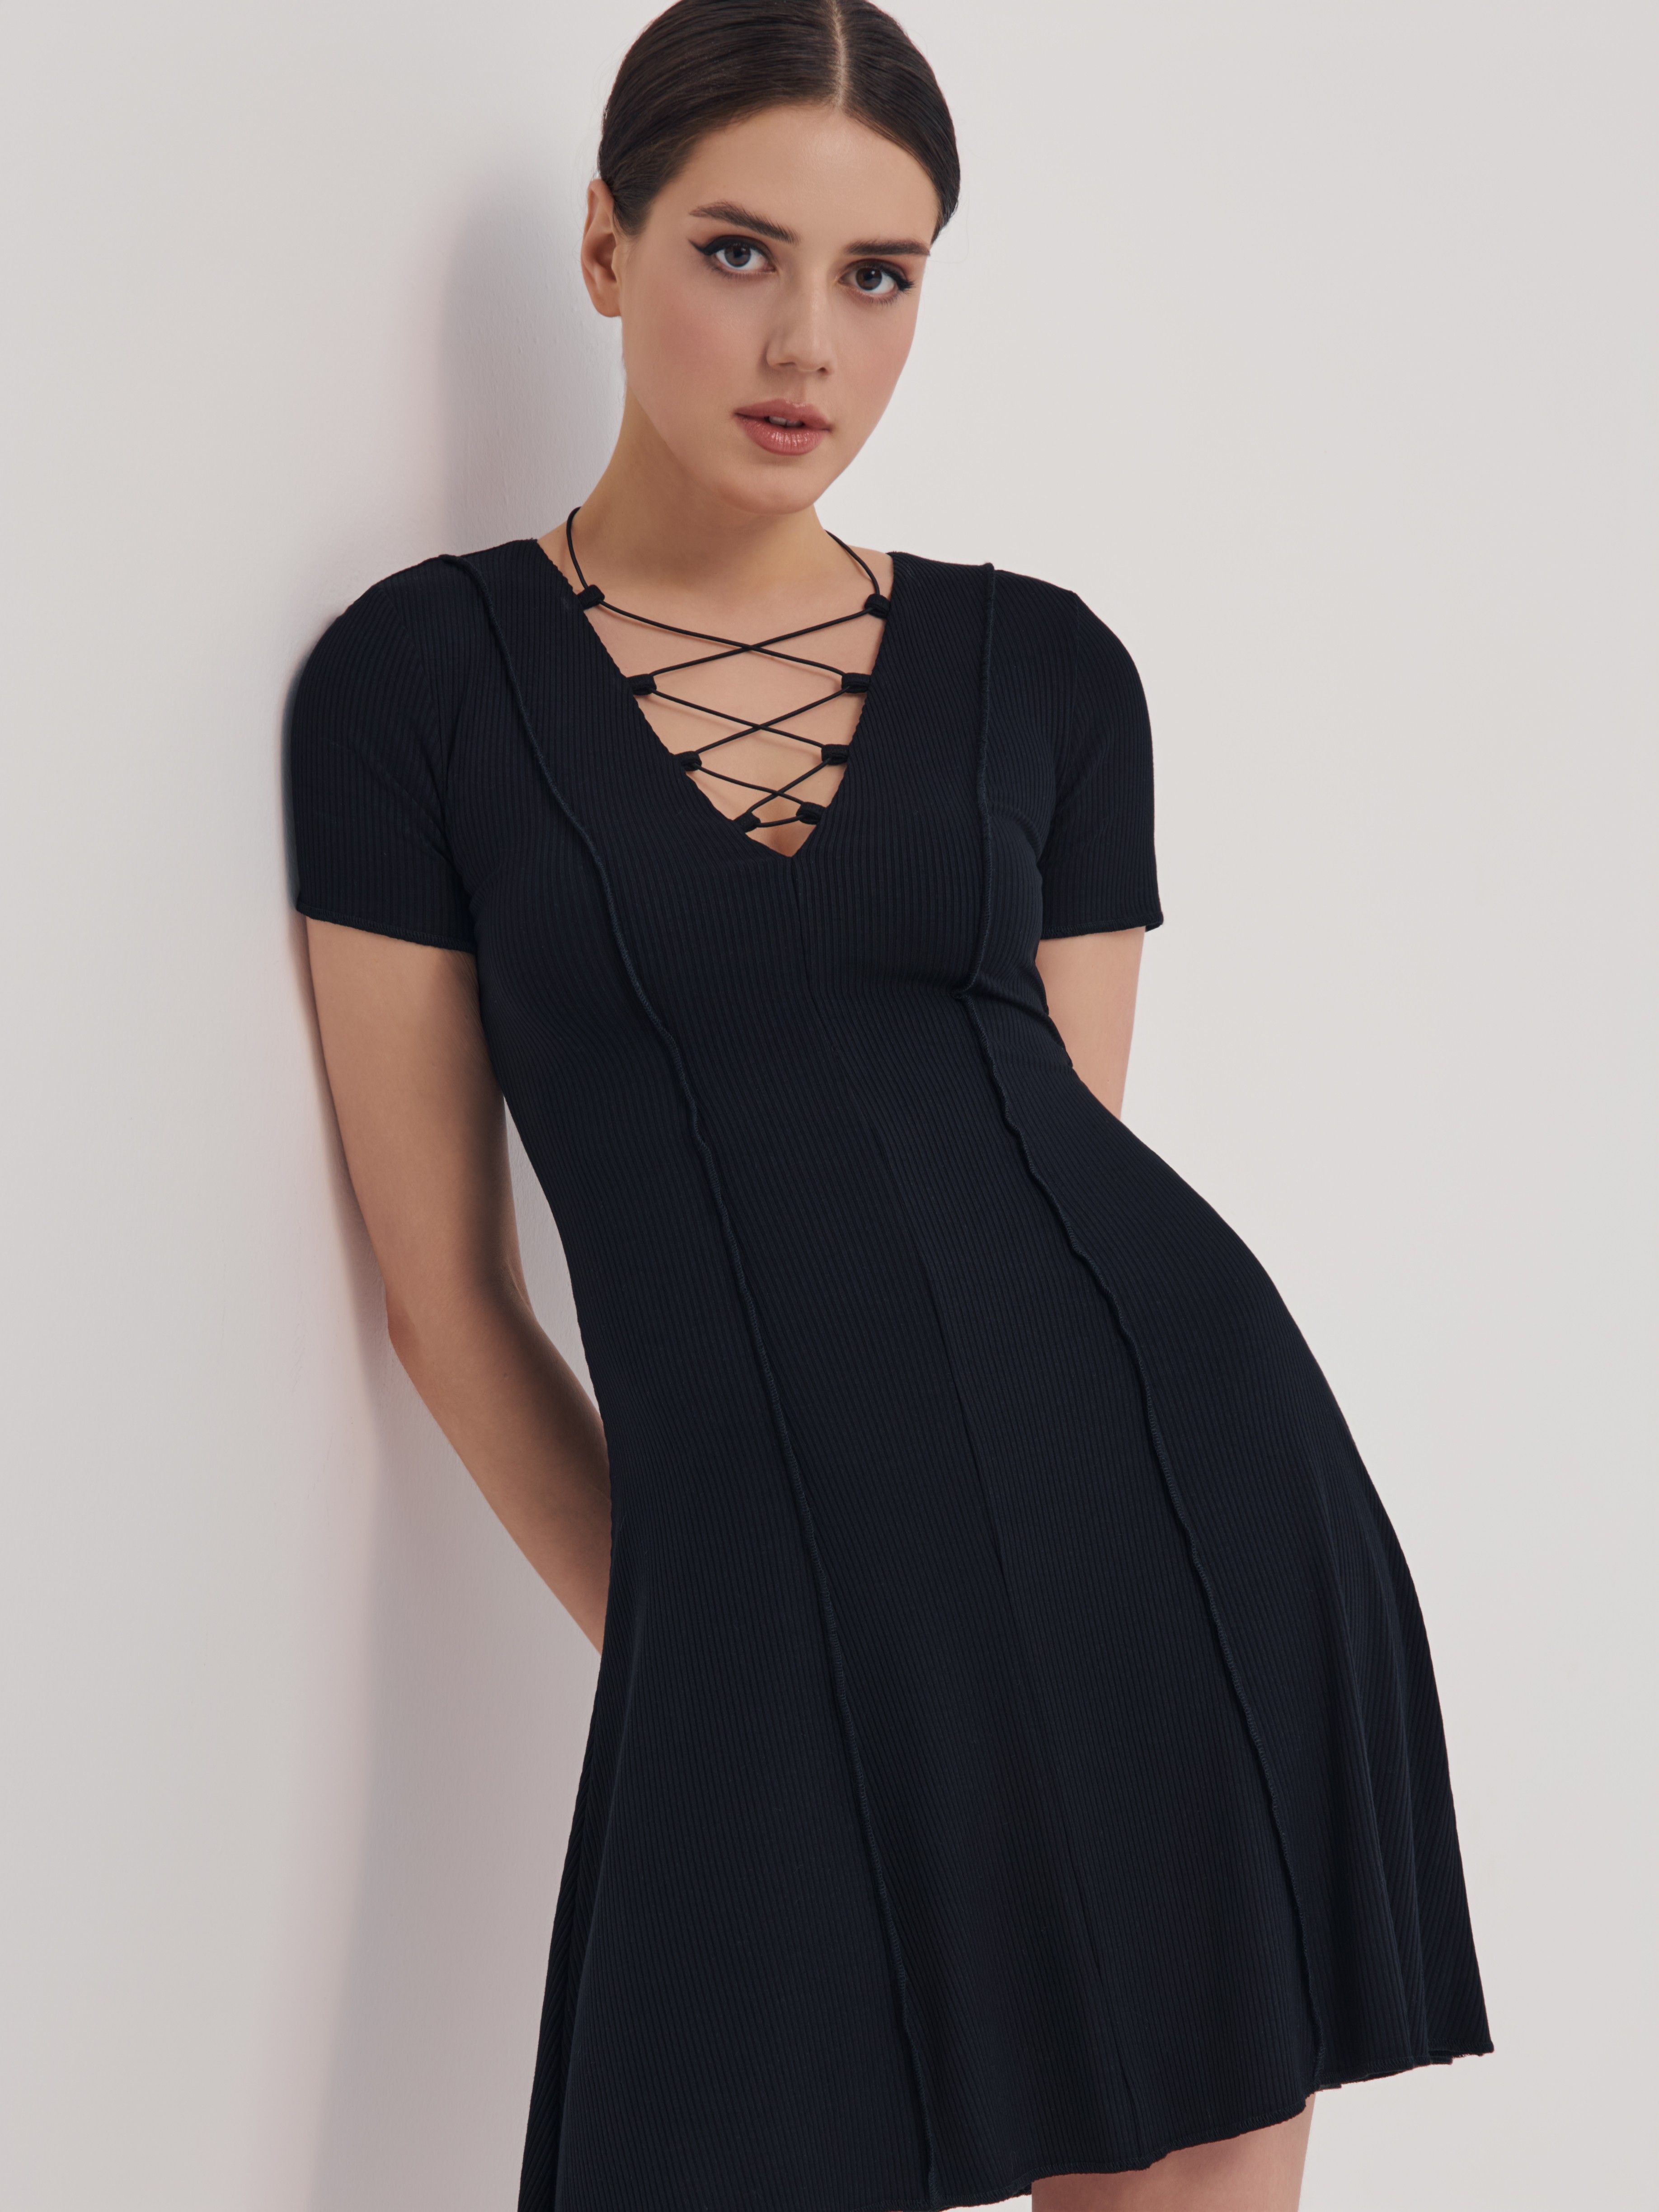 Платье А-силуэта в рубчик на шнуровке LPL 2644 Conte ⭐️, цвет black, размер 170-84-90/xs